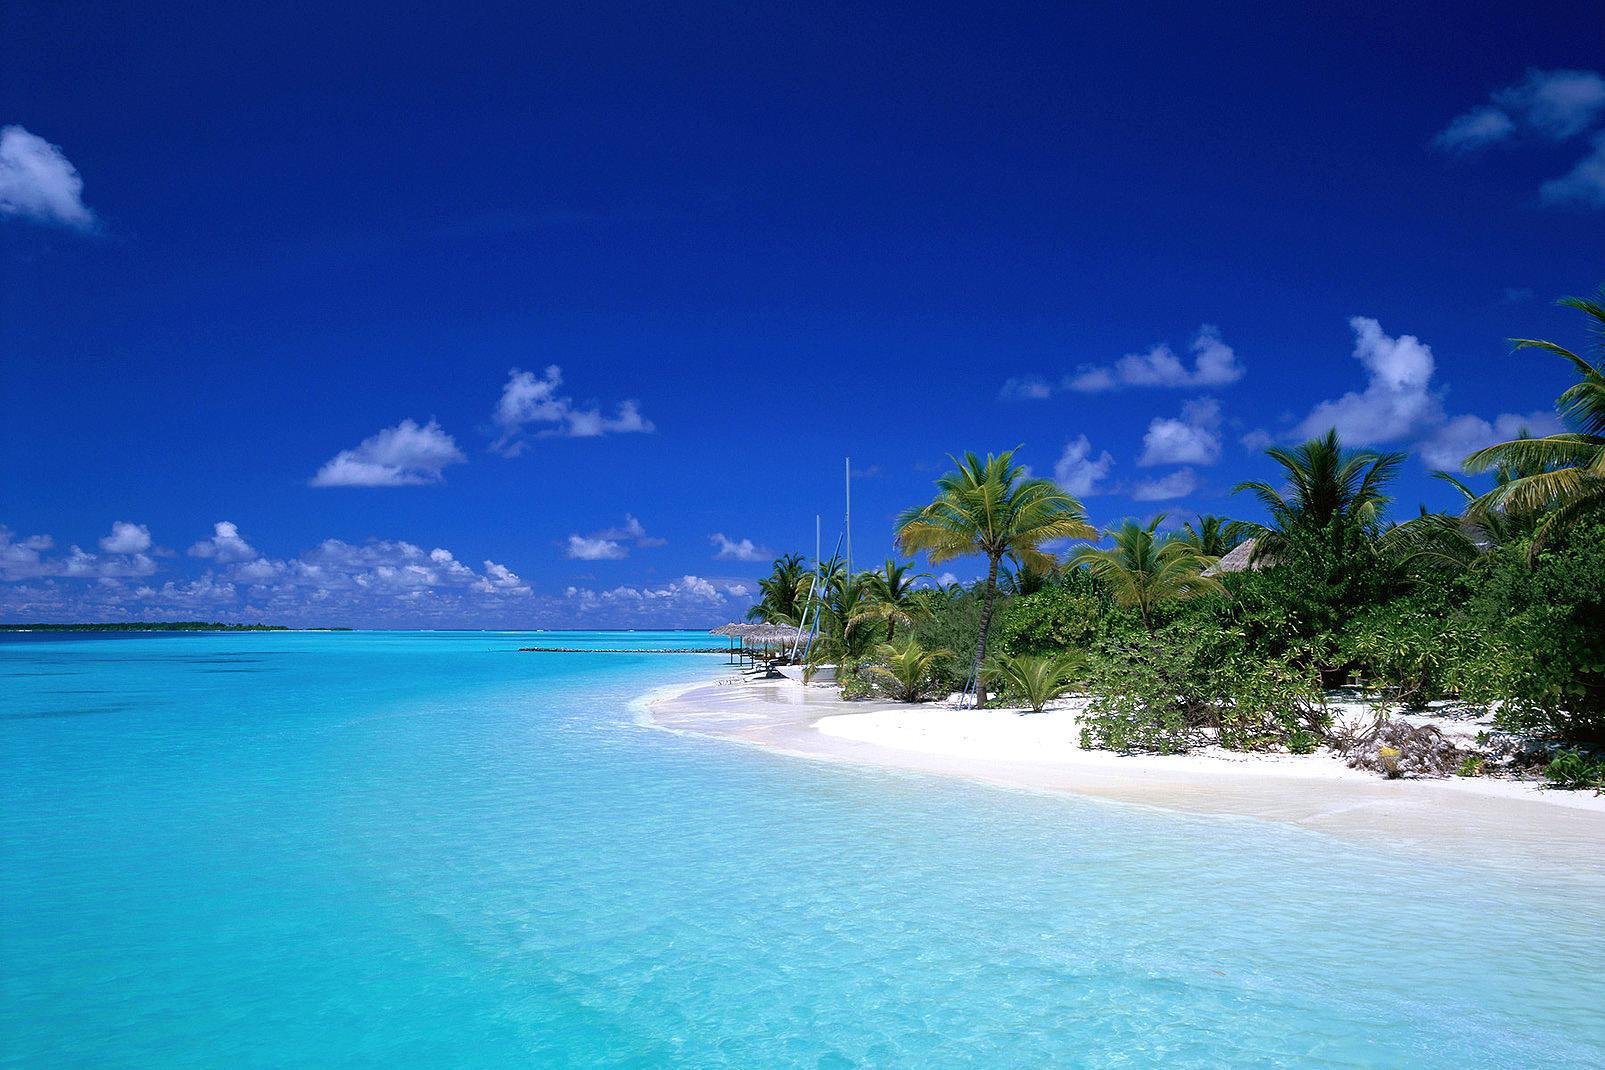 Ari Nord es uno de los archipiélagos más turísticos de las Maldivas. El archipiélago lo componen numerosas islas entre las que se encuentra la bella y original Dhoni Migili, donde te alojarás en un bungalow y un barco muy confortables. El archipiélago también cuenta con la isla fina y alargada de Kuramathi, la única isla de las Maldivas que posee 3 hoteles.

Te invitamos a soñar leyendo nuestras fichas, ...